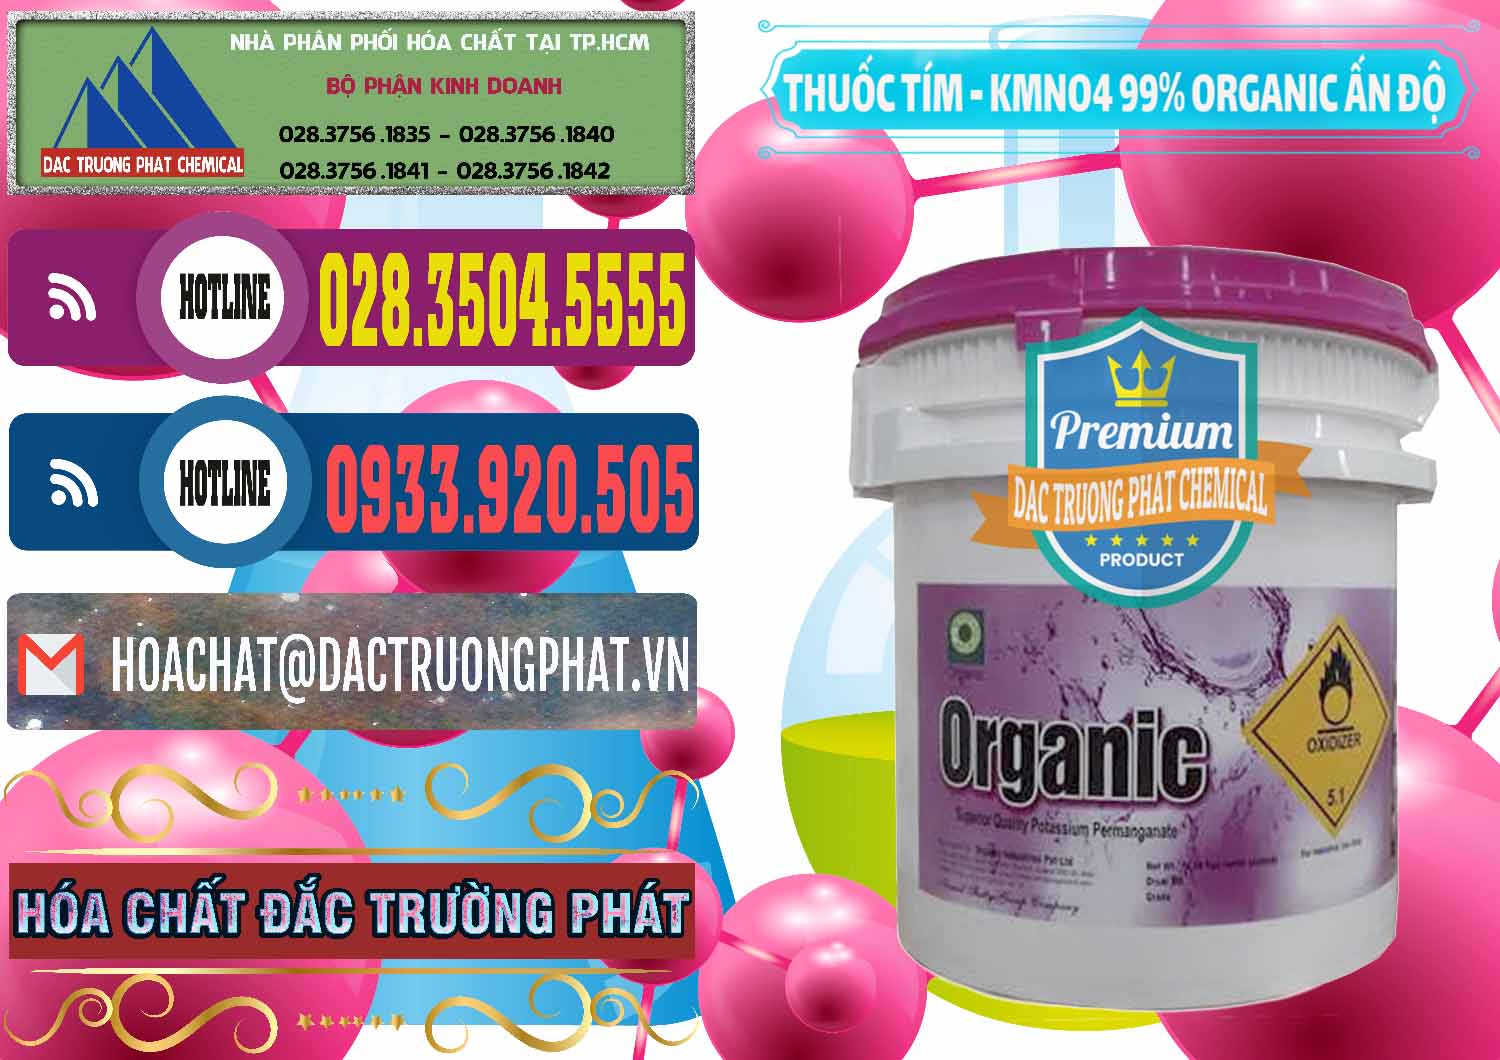 Nơi chuyên phân phối ( bán ) Thuốc Tím - KMNO4 99% Organic Ấn Độ India - 0216 - Đơn vị cung cấp - kinh doanh hóa chất tại TP.HCM - muabanhoachat.com.vn